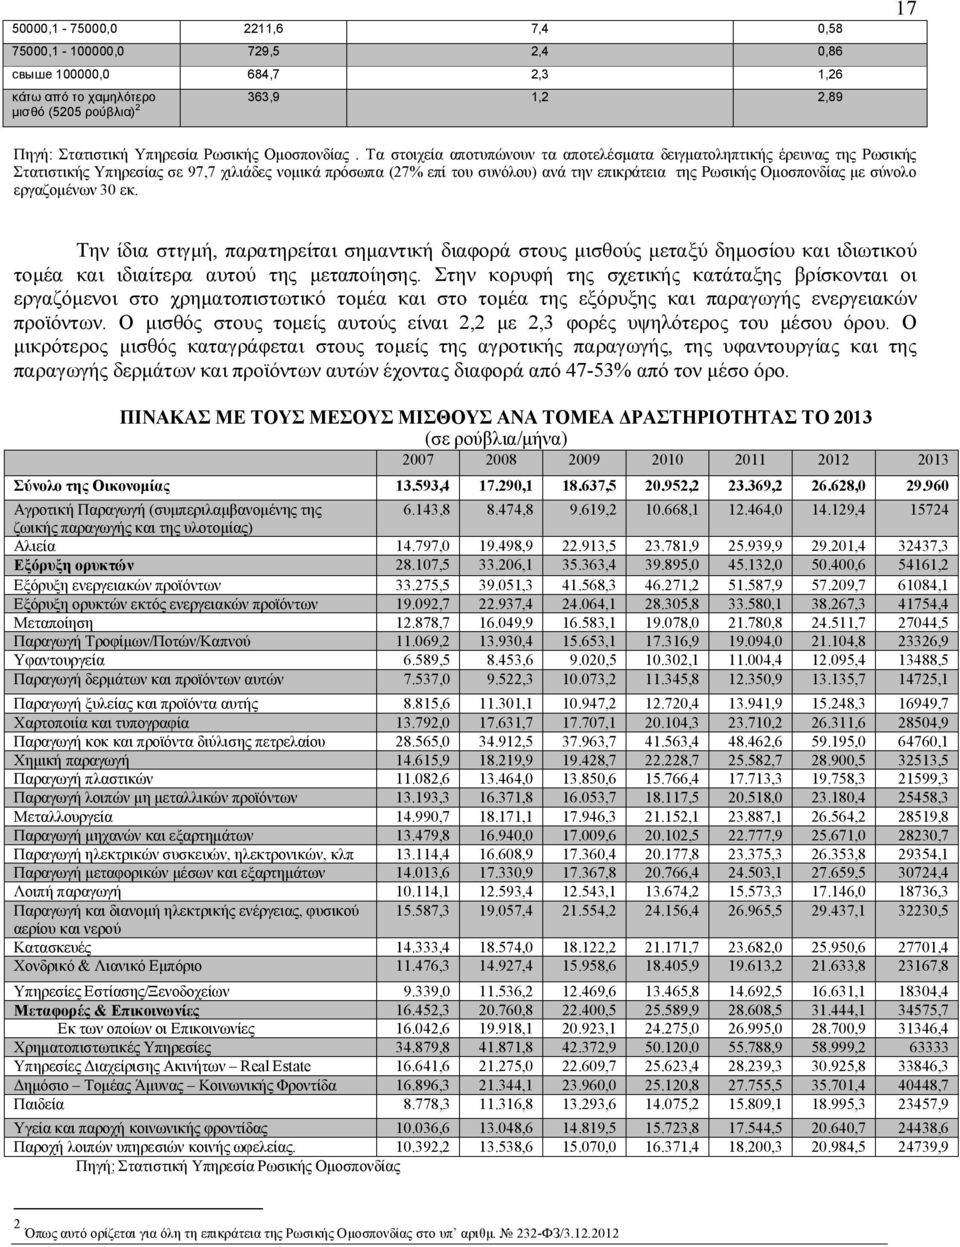 Τα στοιχεία αποτυπώνουν τα αποτελέσματα δειγματοληπτικής έρευνας της Ρωσικής Στατιστικής Υπηρεσίας σε 97,7 χιλιάδες νομικά πρόσωπα (27% επί του συνόλου) ανά την επικράτεια της Ρωσικής Ομοσπονδίας με